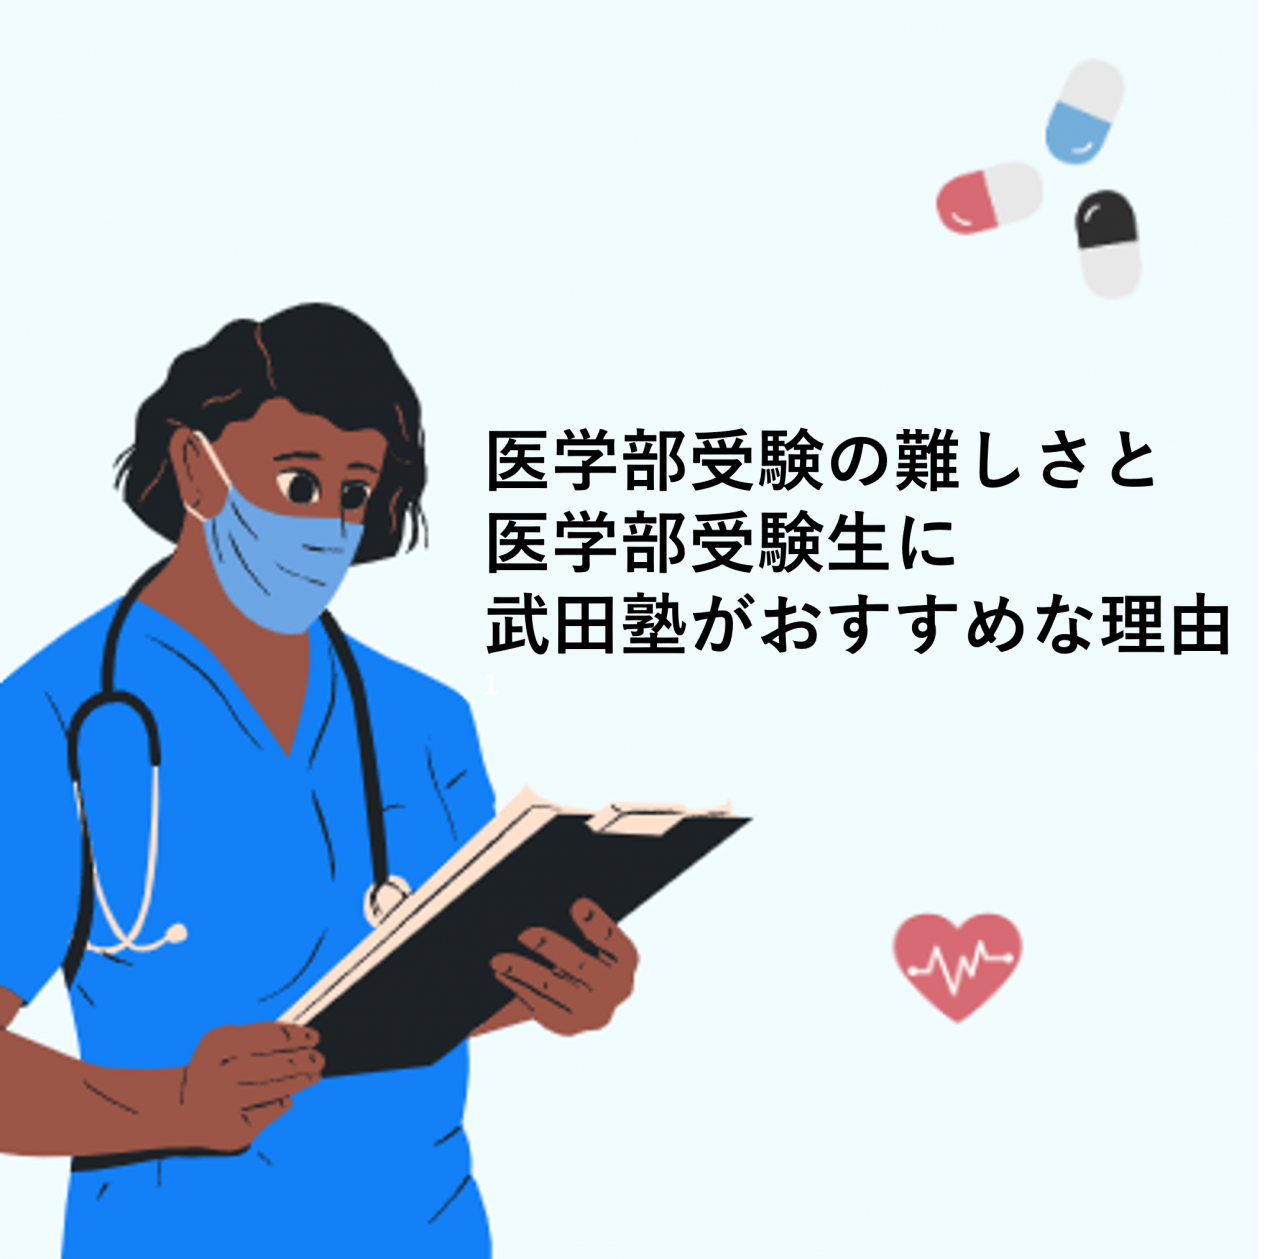 医学部受験の難しさと医学部受験生に武田塾がおすすめな理由